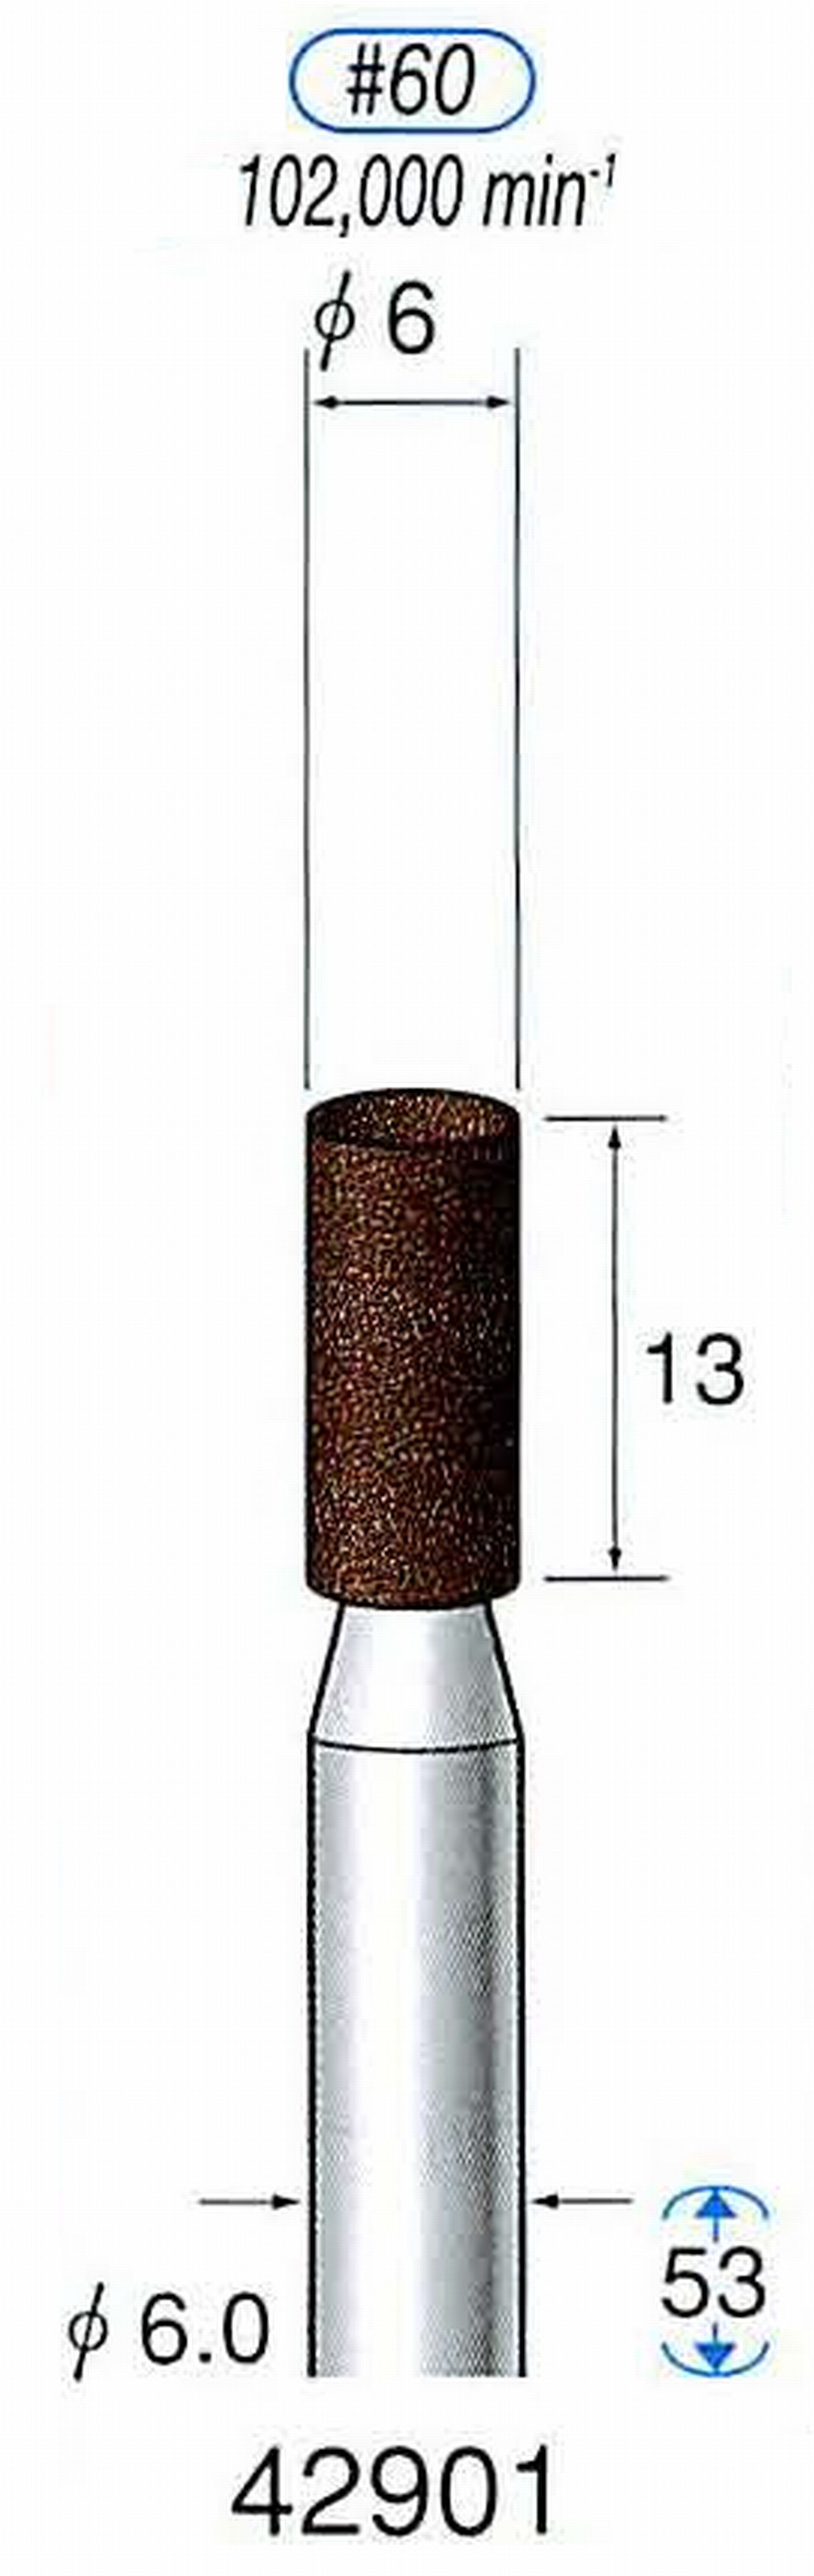 ナカニシ/NAKANISHI 軸付砥石(A・WA砥粒) ブラウン砥石 軸径(シャンク) φ6.0mm 42901